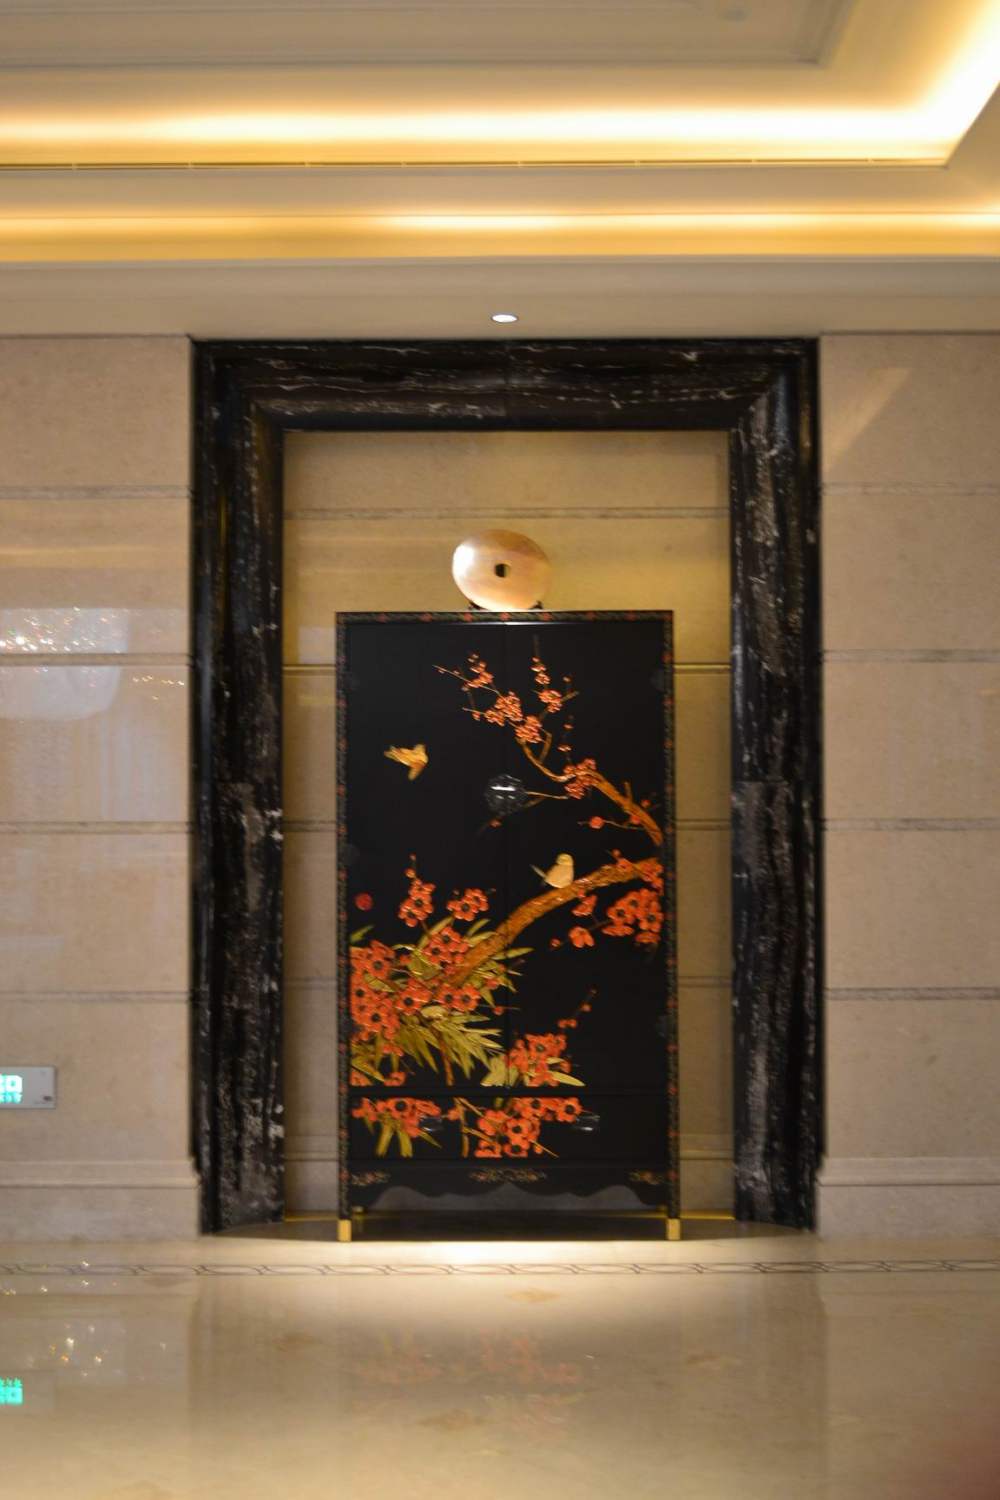 上海华尔道夫酒店(The Waldorf Astoria OnTheBund)(HBA)10.9第10页更新_调整大小 DSC_0532.JPG